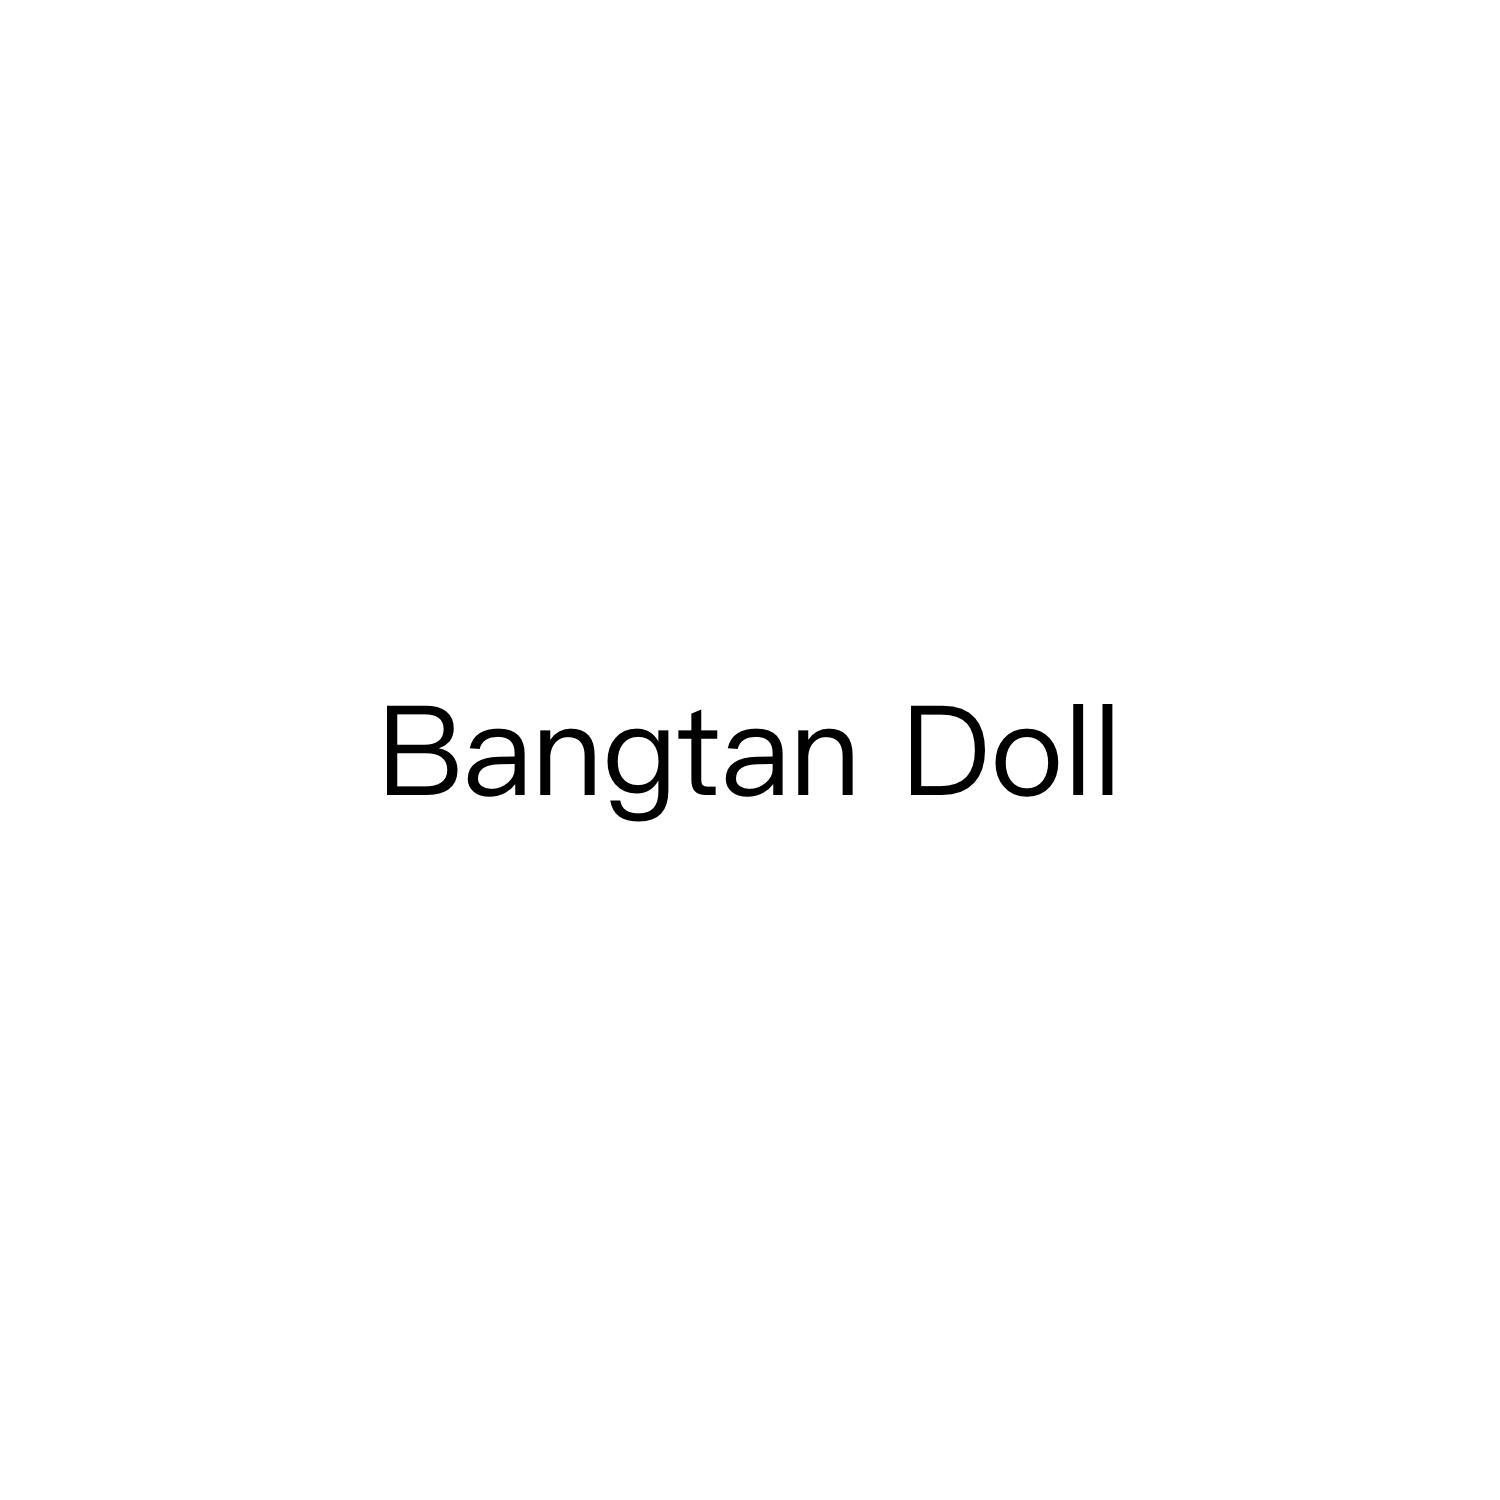 BANGTAN DOLL